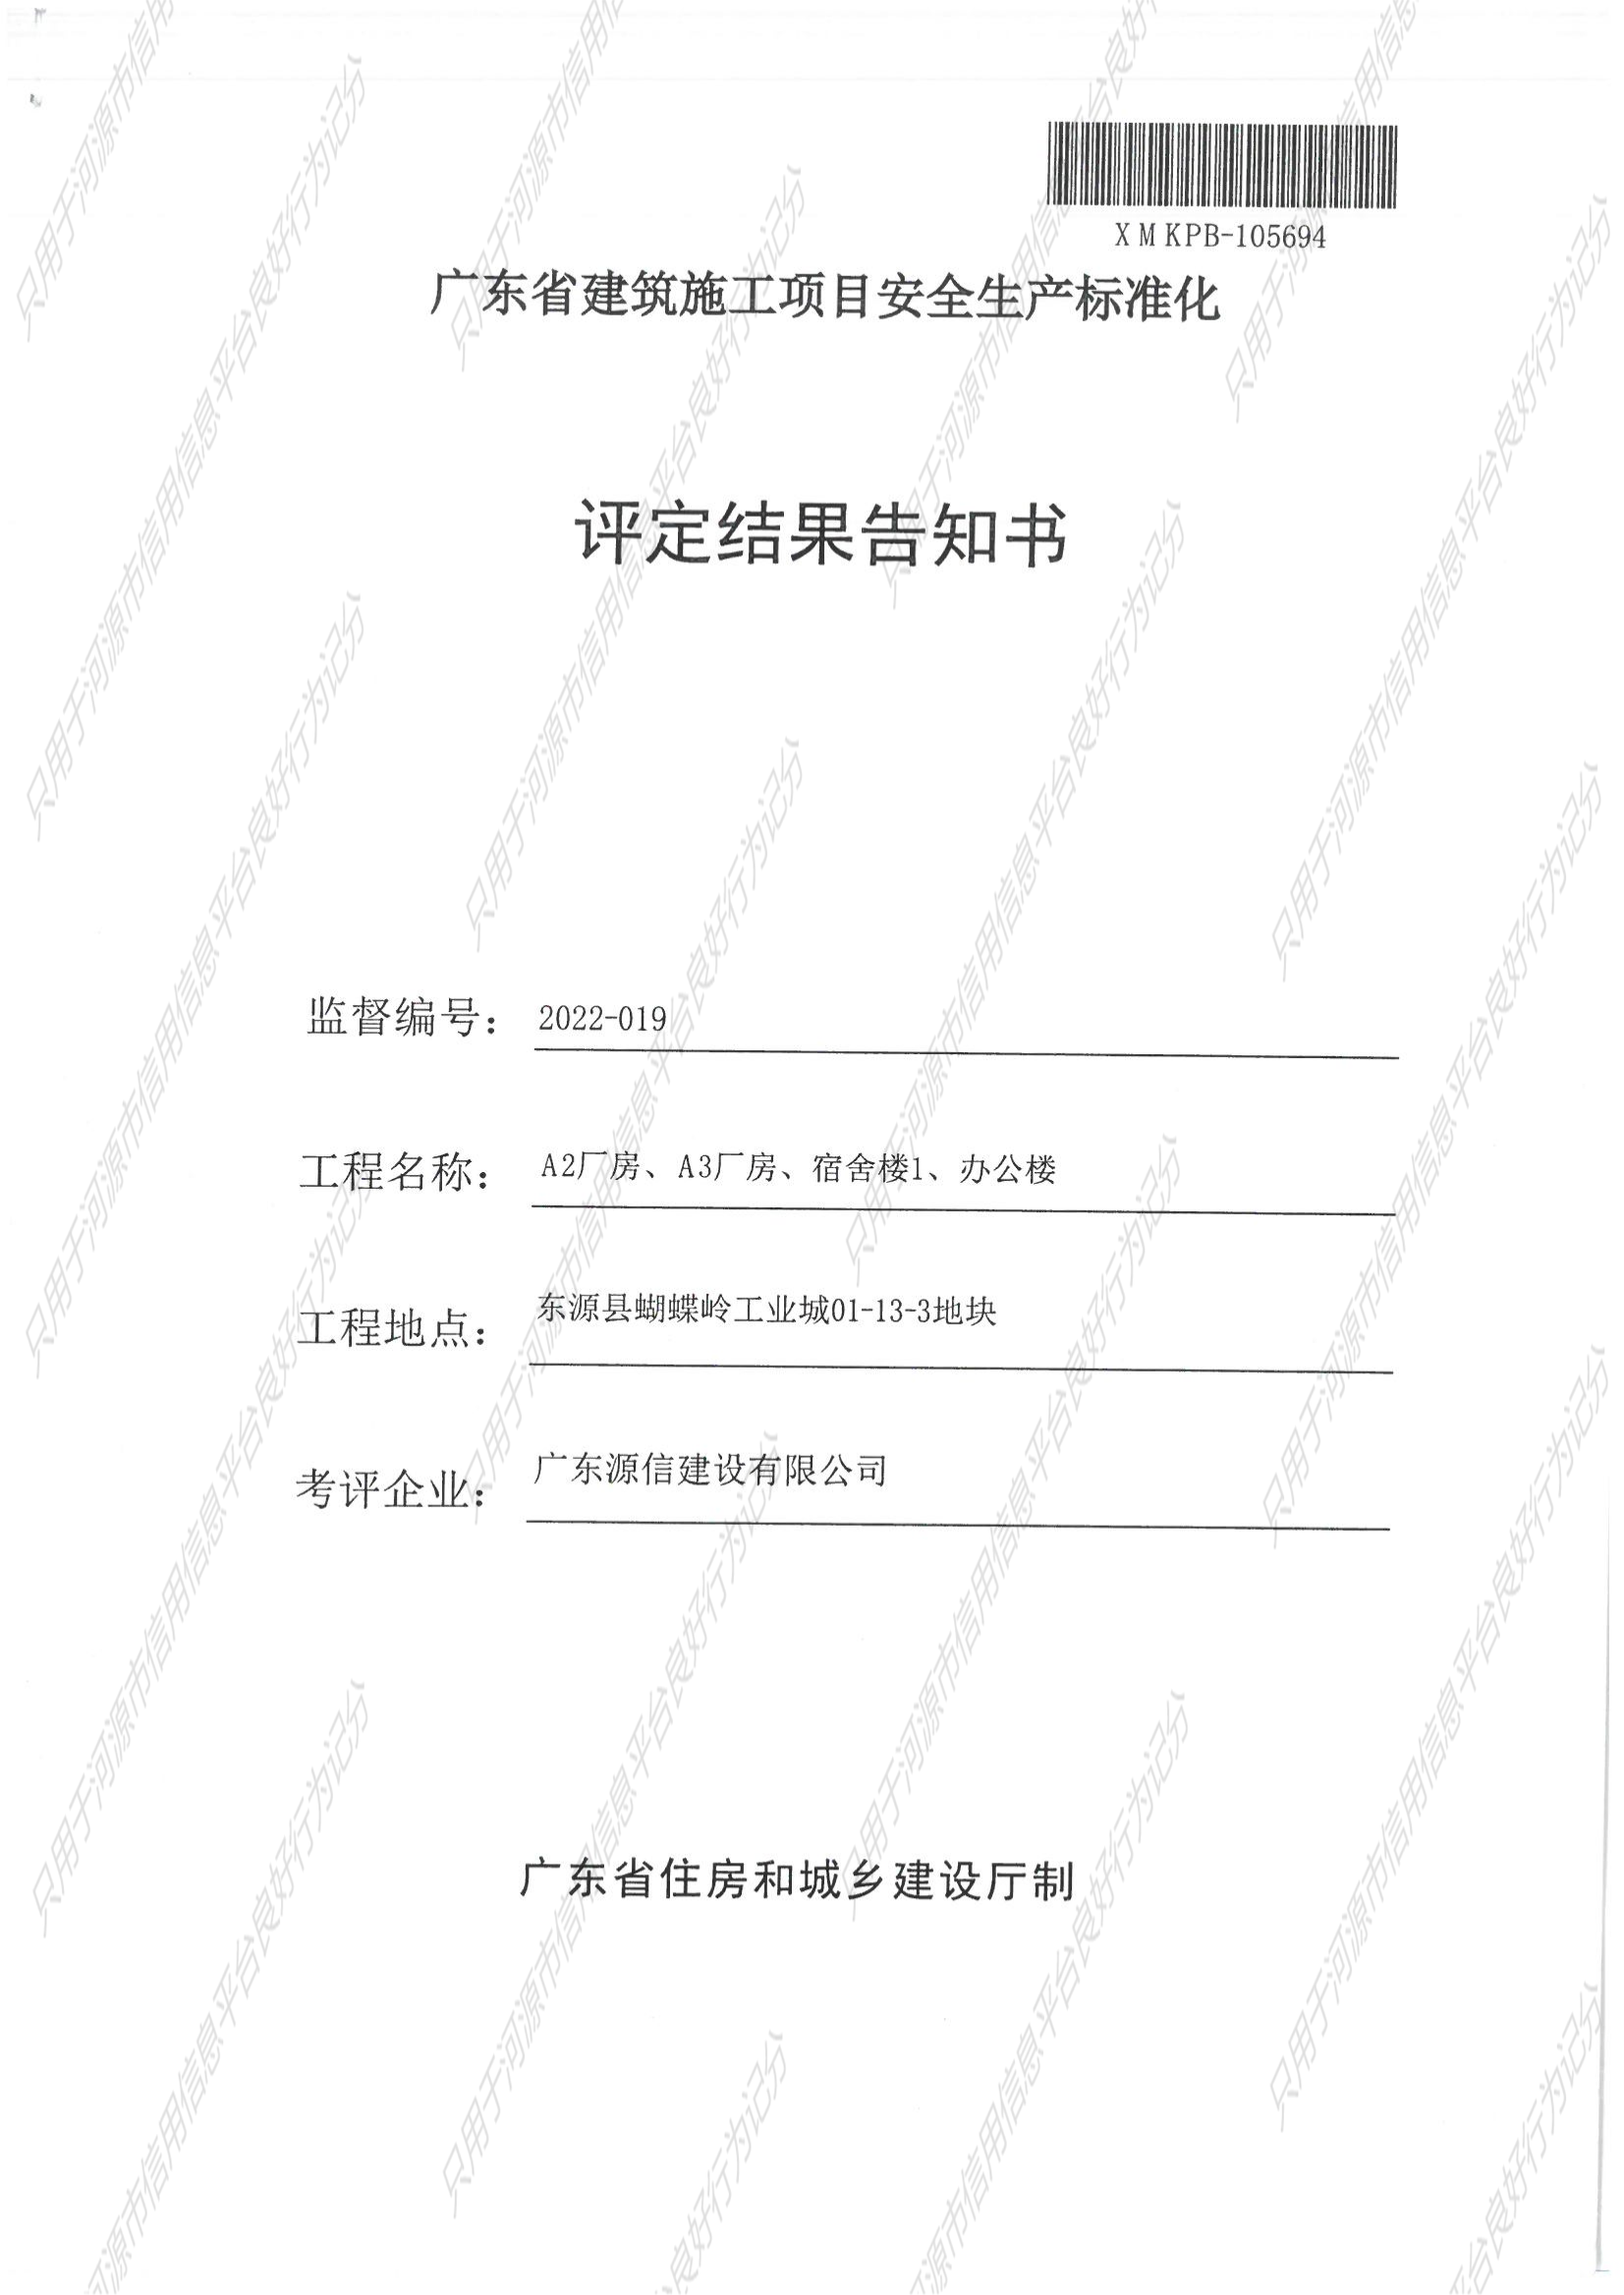 广东省建筑施工项目安全生产标准化评定结果告知书_00